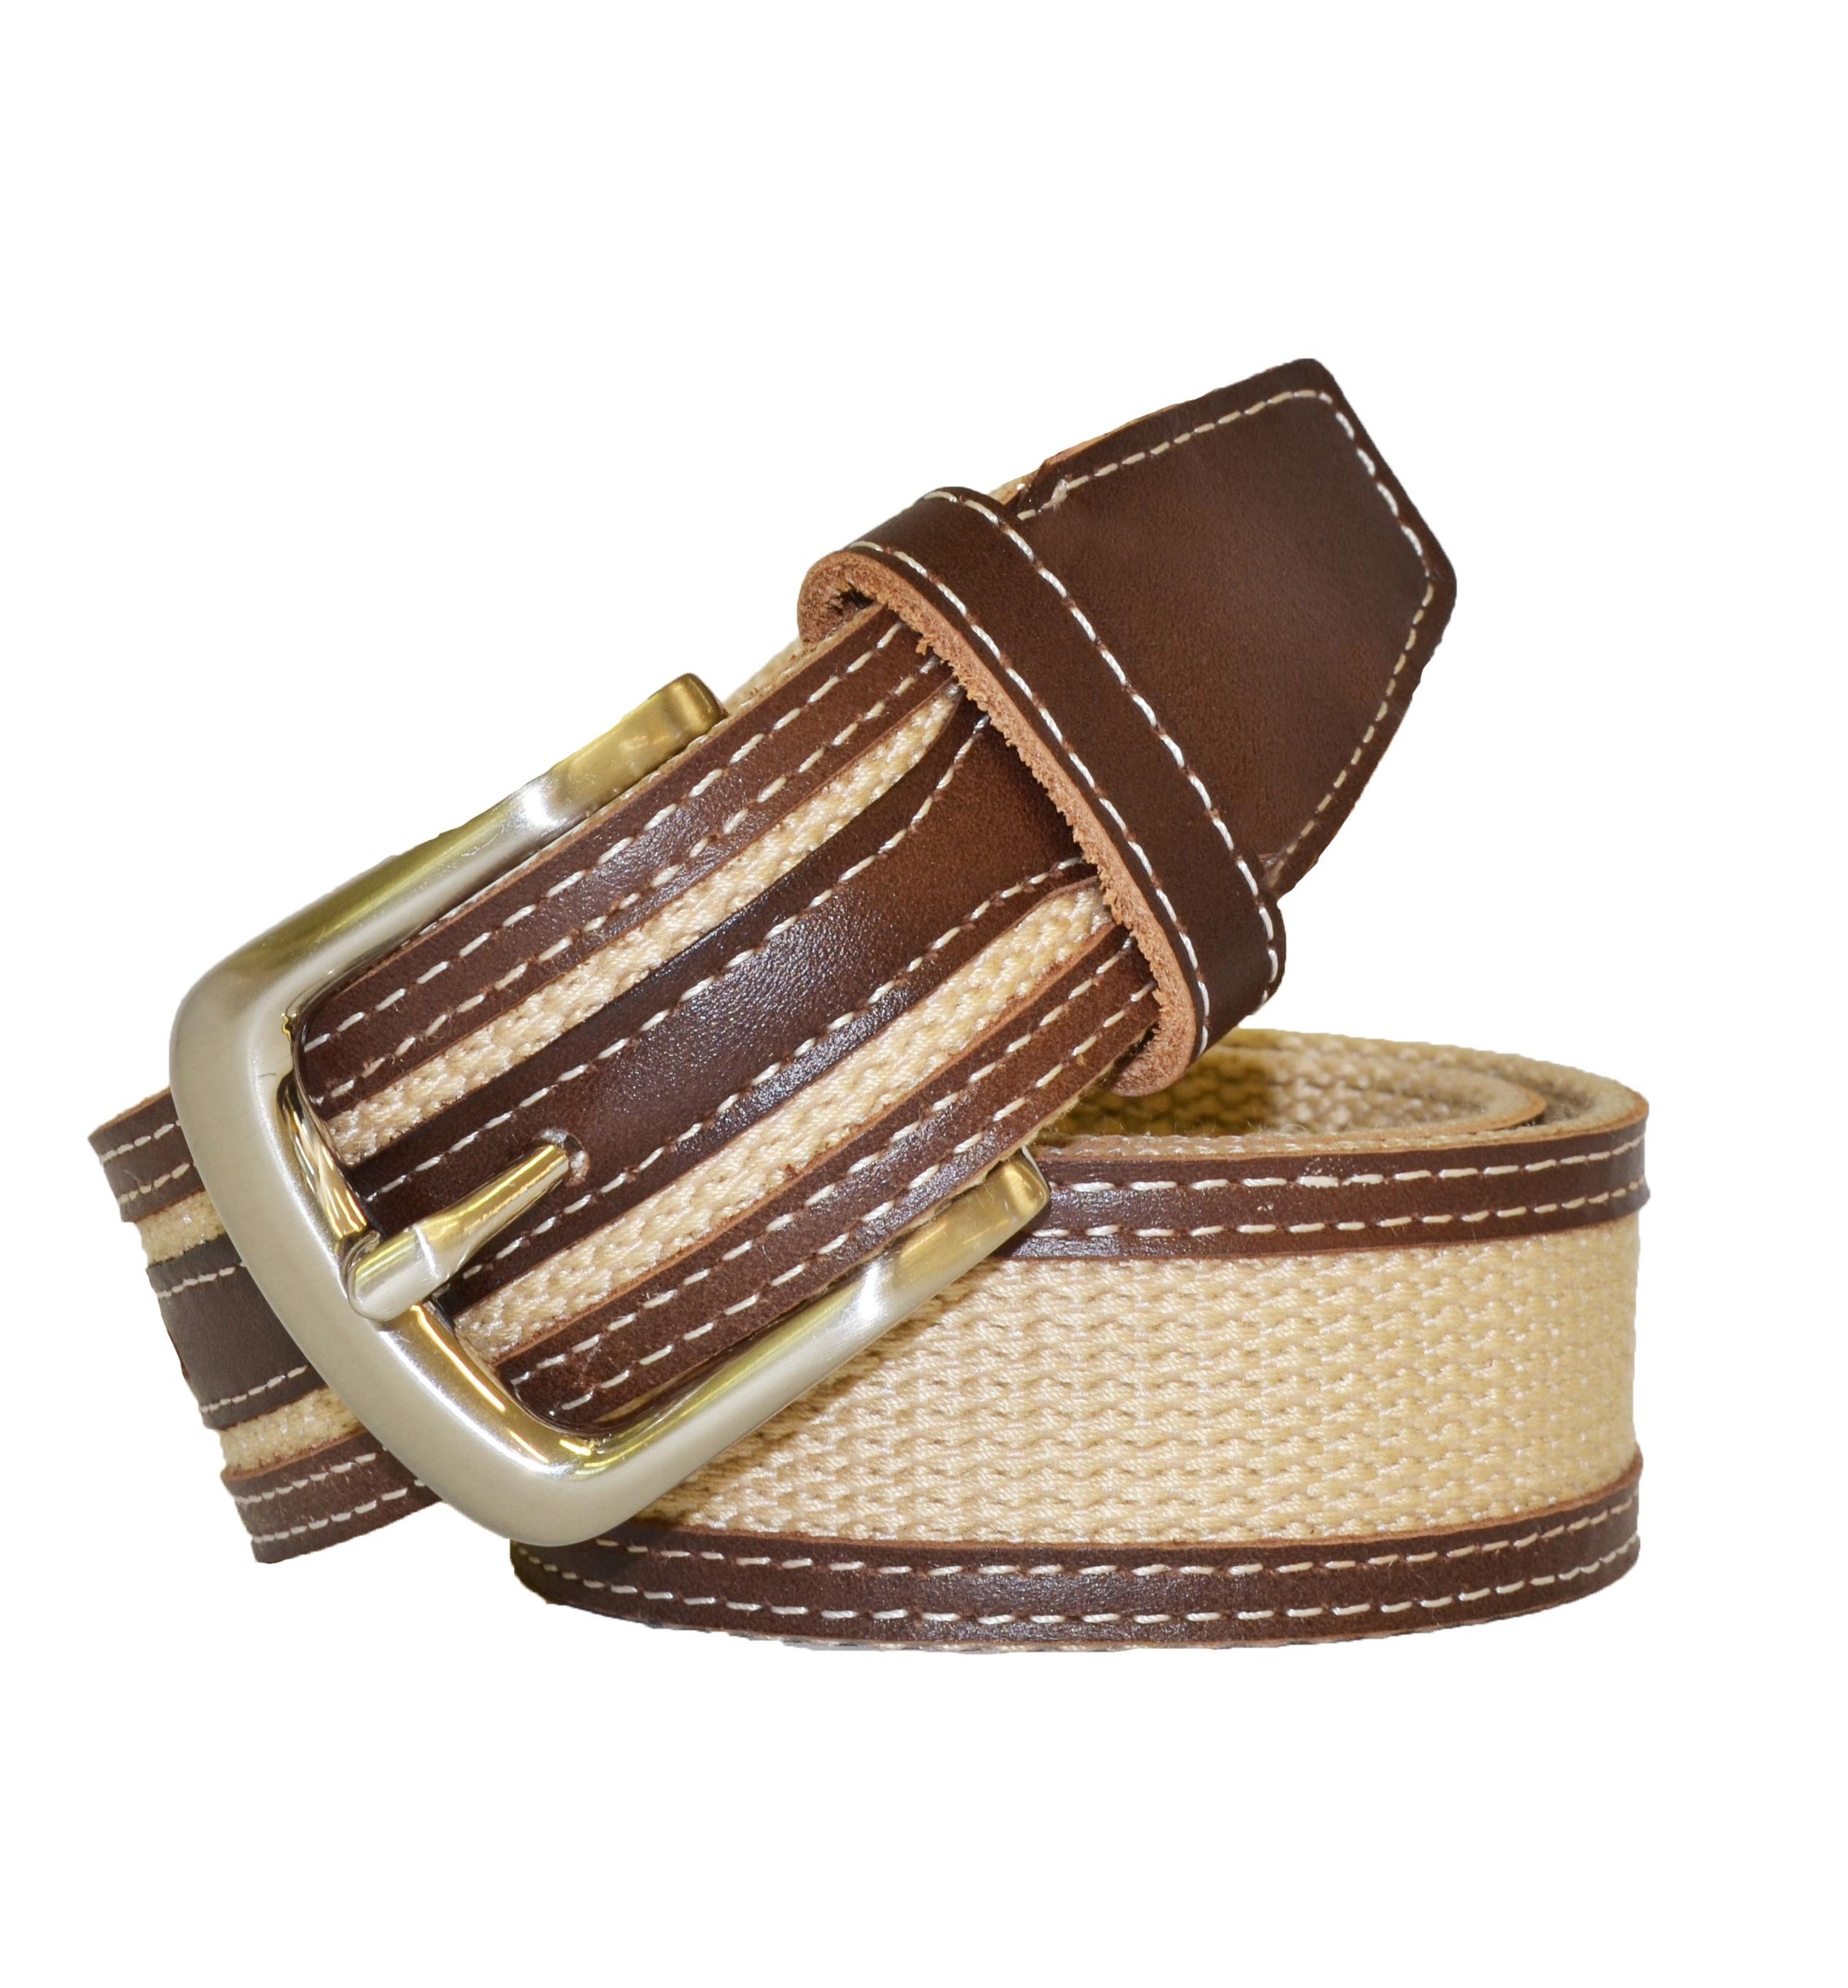 BYRON - Cotton Canvas Men's Tan Leather Belt  - Belt N Bags